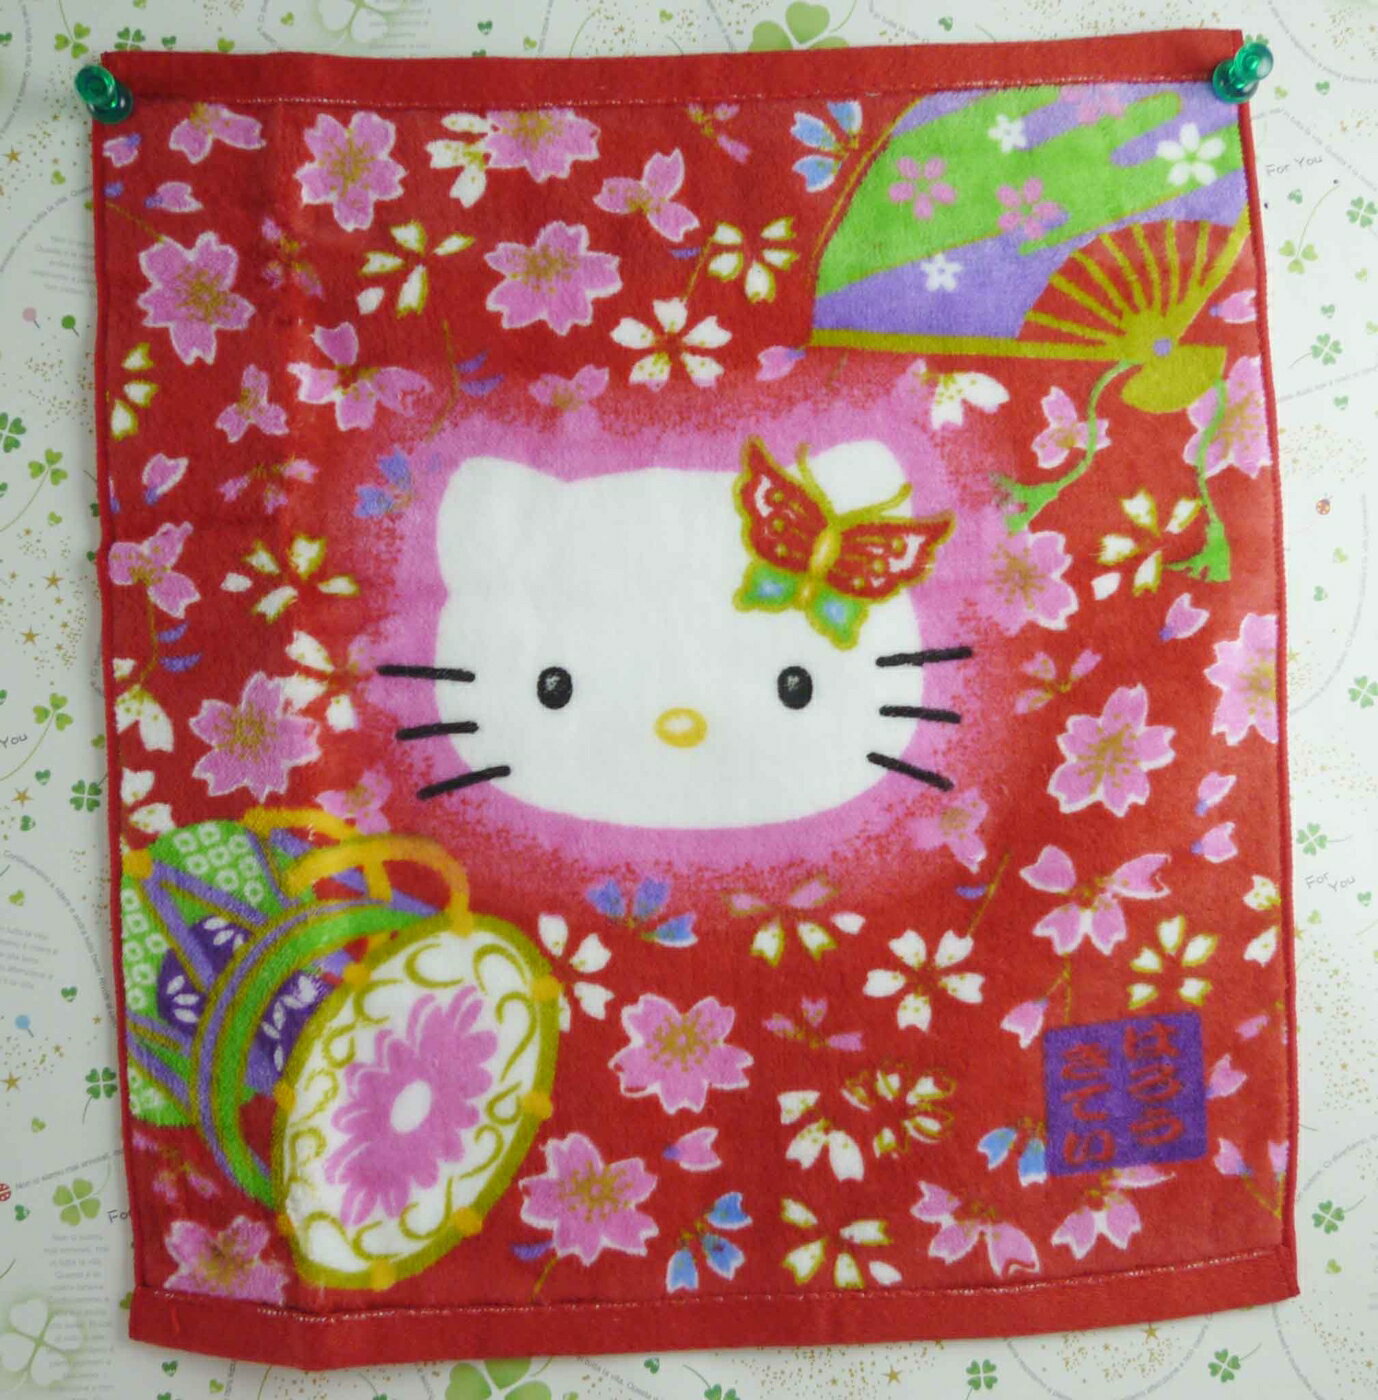 【震撼精品百貨】Hello Kitty 凱蒂貓 方巾-限量款-和風-紅蝴蝶 震撼日式精品百貨